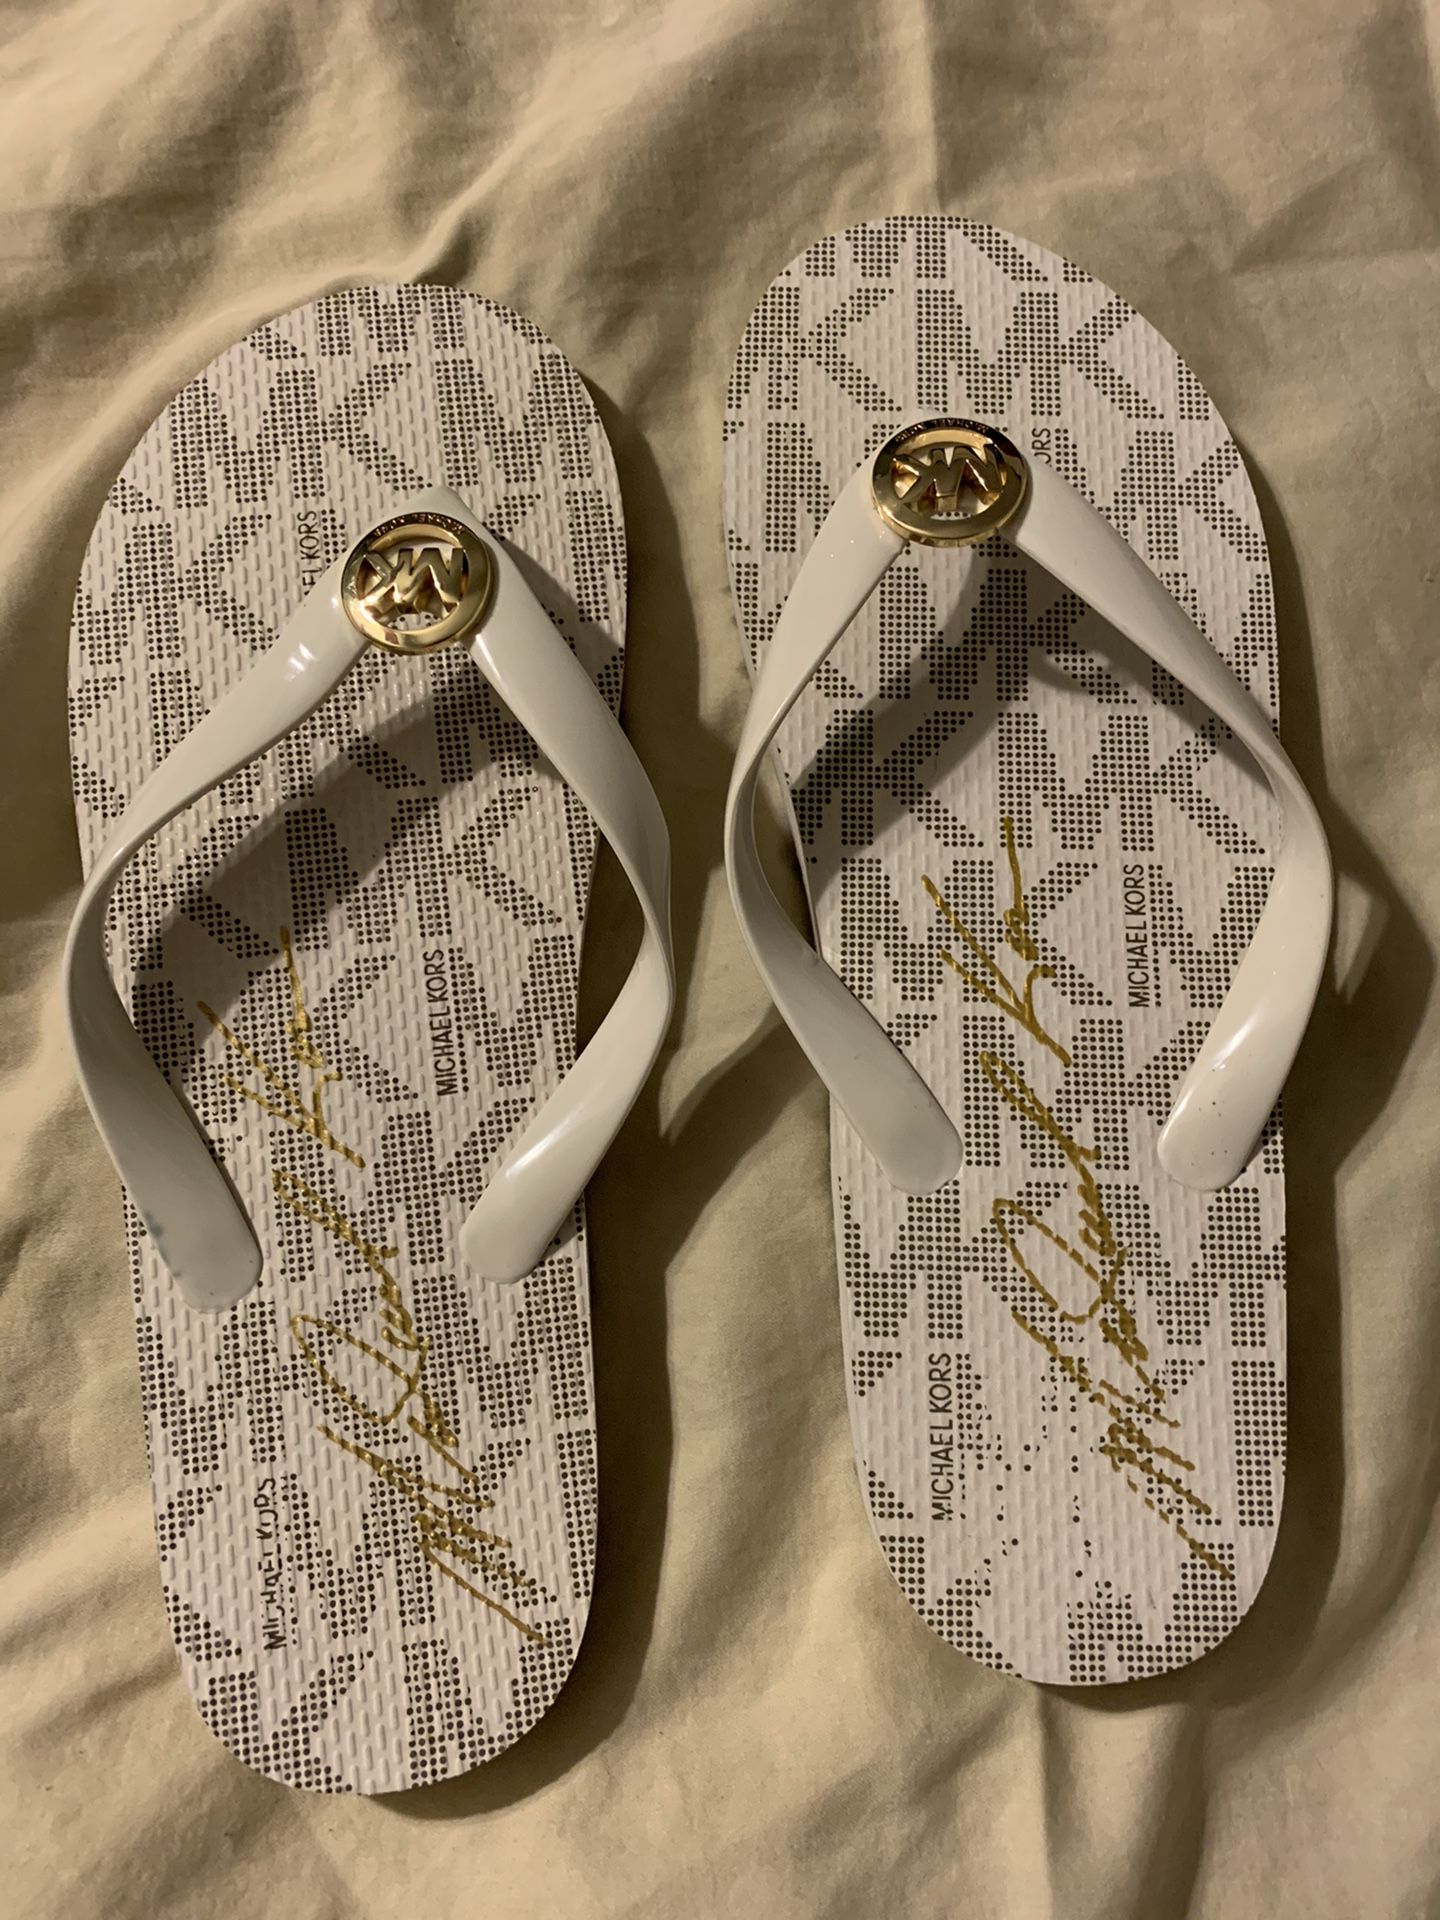 Michael Kors Sandals - Size 9